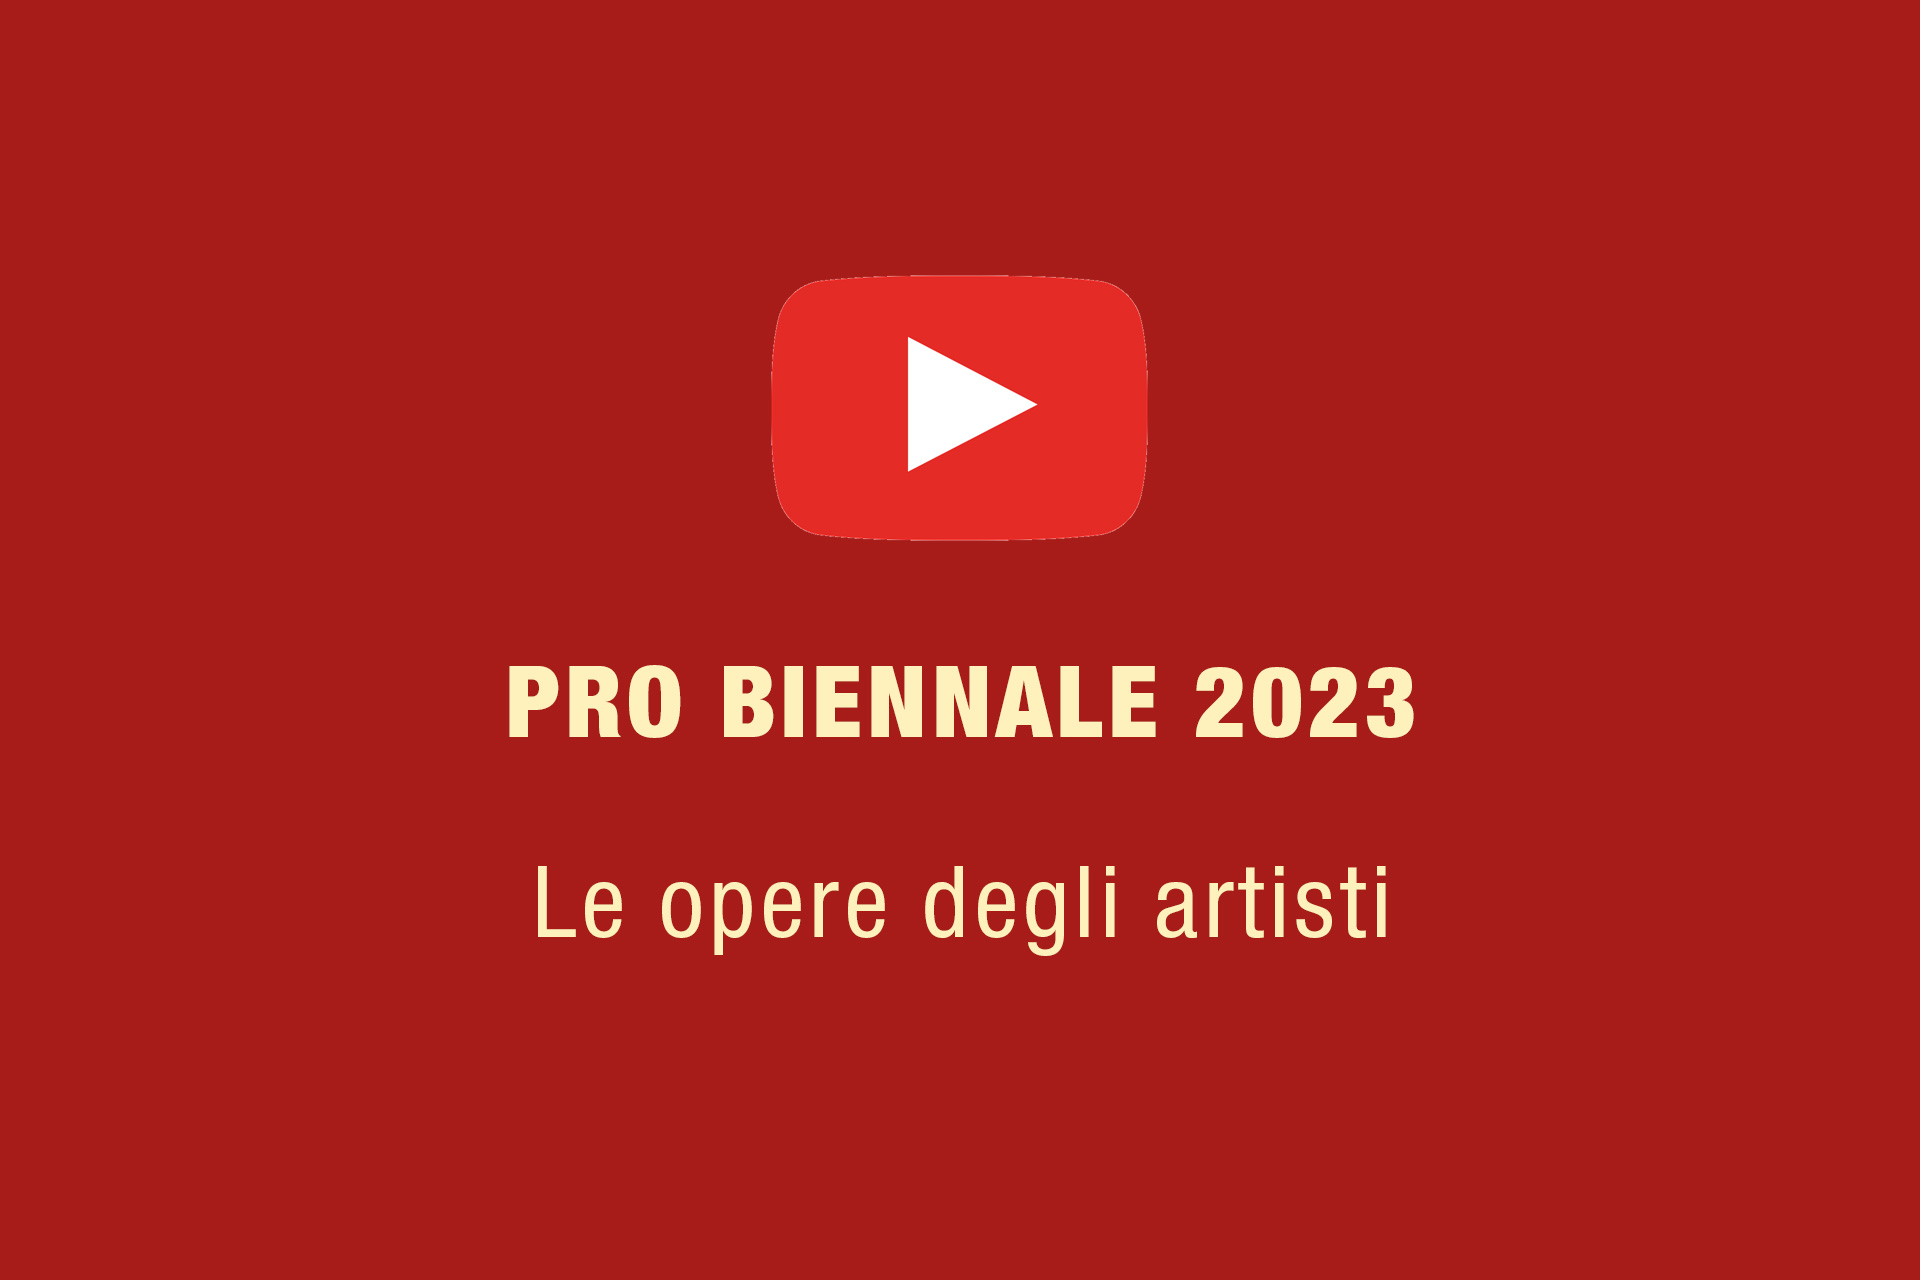 Pro Biennale 2023